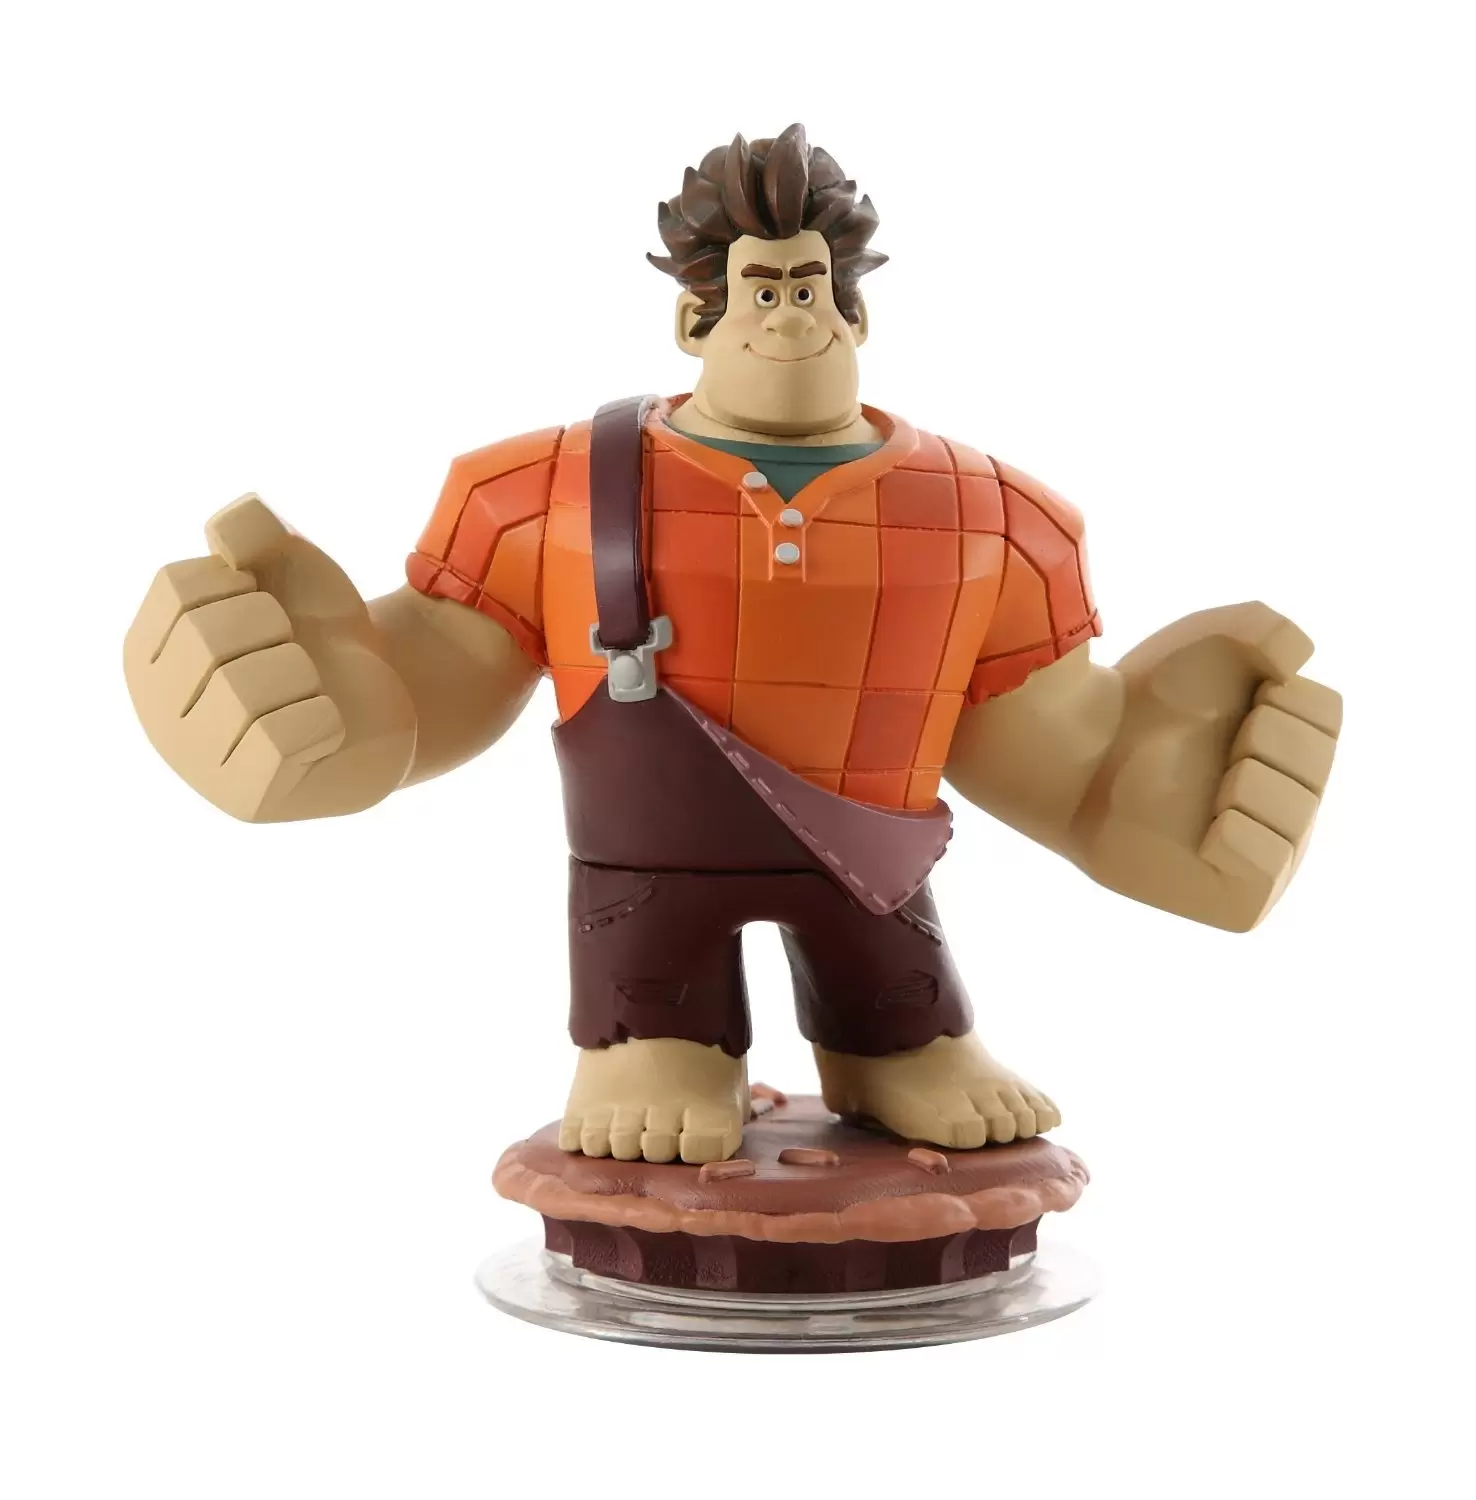 Disney Infinity Action figures - Wreck-it-Ralph